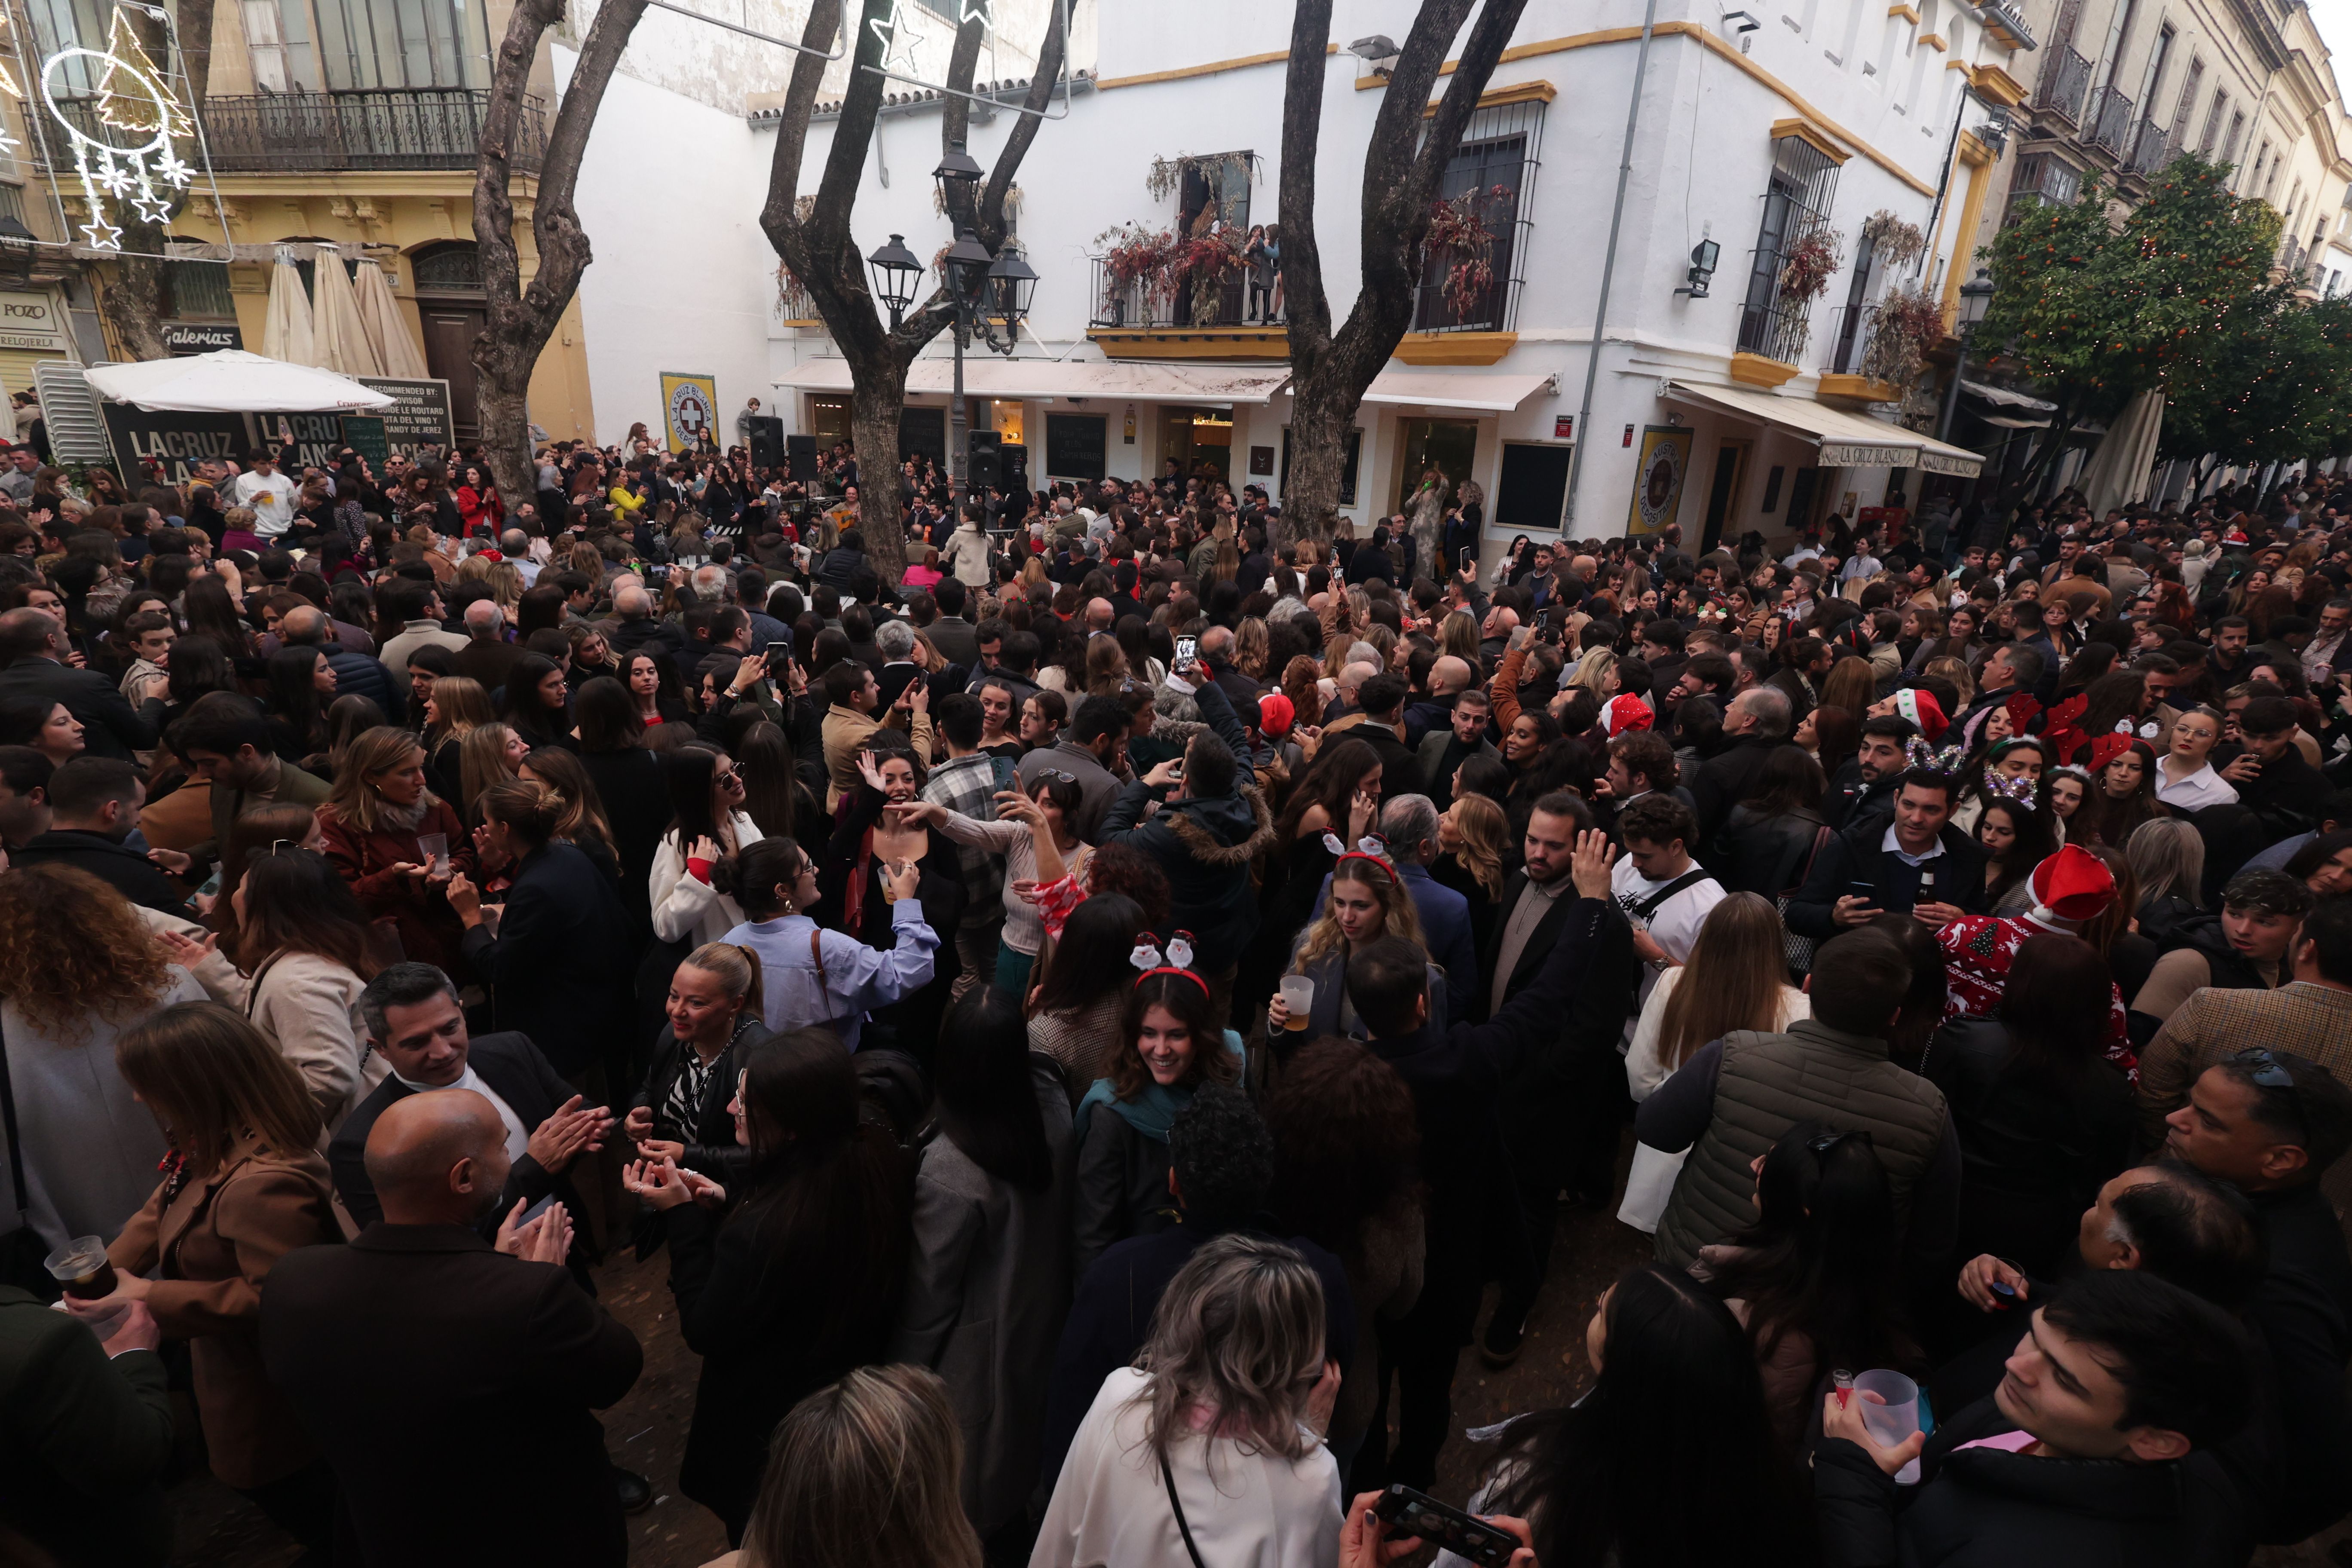 Vista de la zona de la plaza de La Yerba, este domingo de Nochebuena en Jerez.